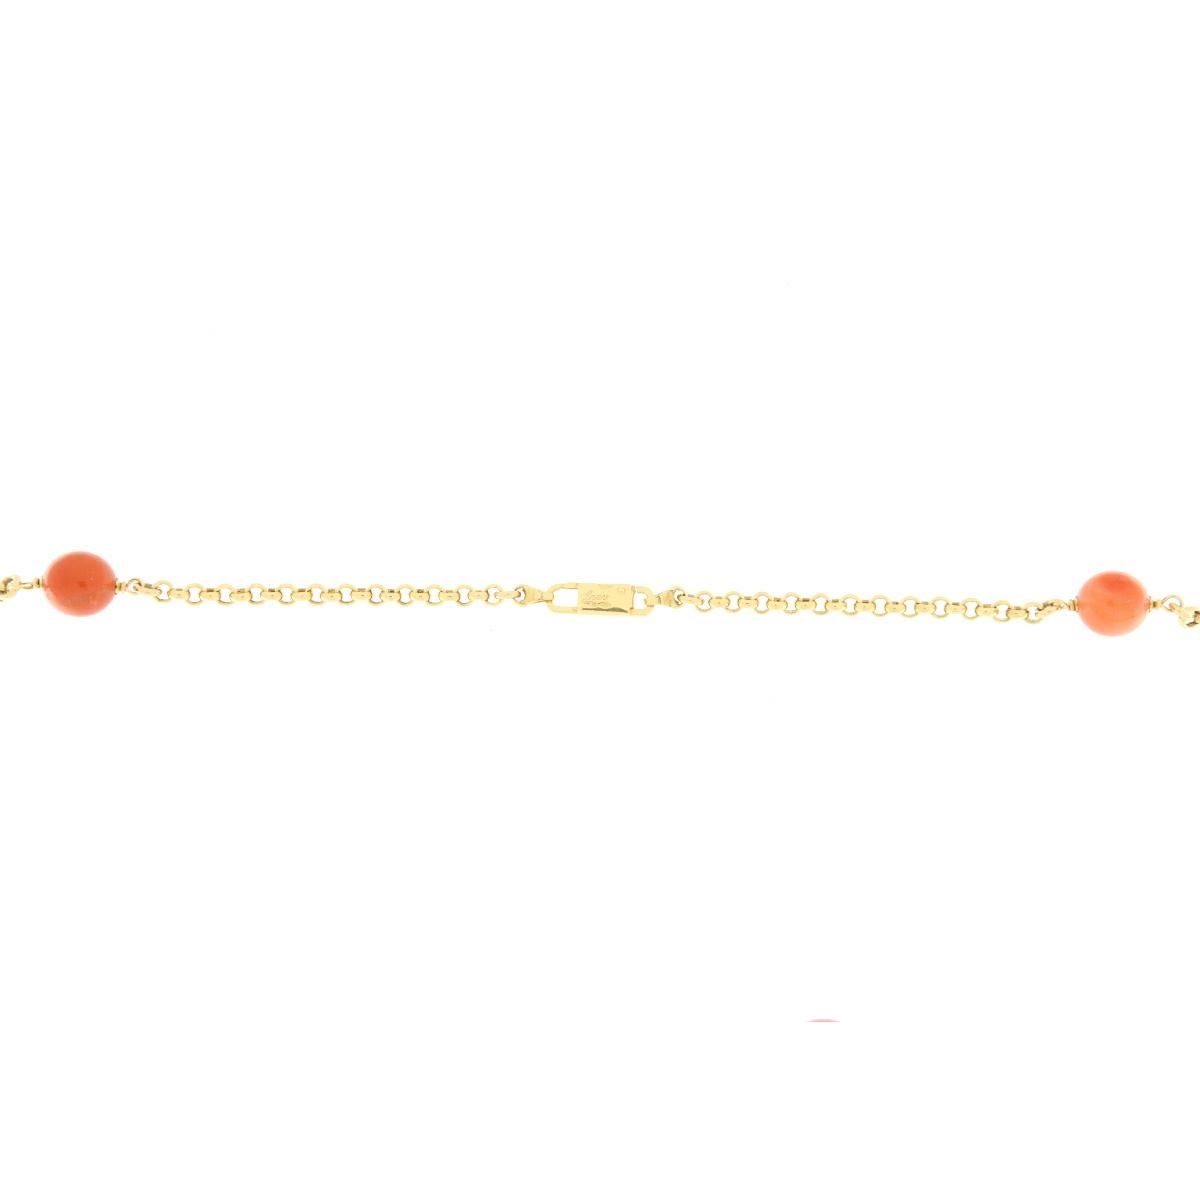 La collana in oro giallo è lunga cm.95 ed è intervallata da sfere in corallo giapponese color arancio, perle australiane e rondelle in quarzo lemon sfaccetate. La maglia della collana è una rollò. La collana può essere indossata sia lunga che a